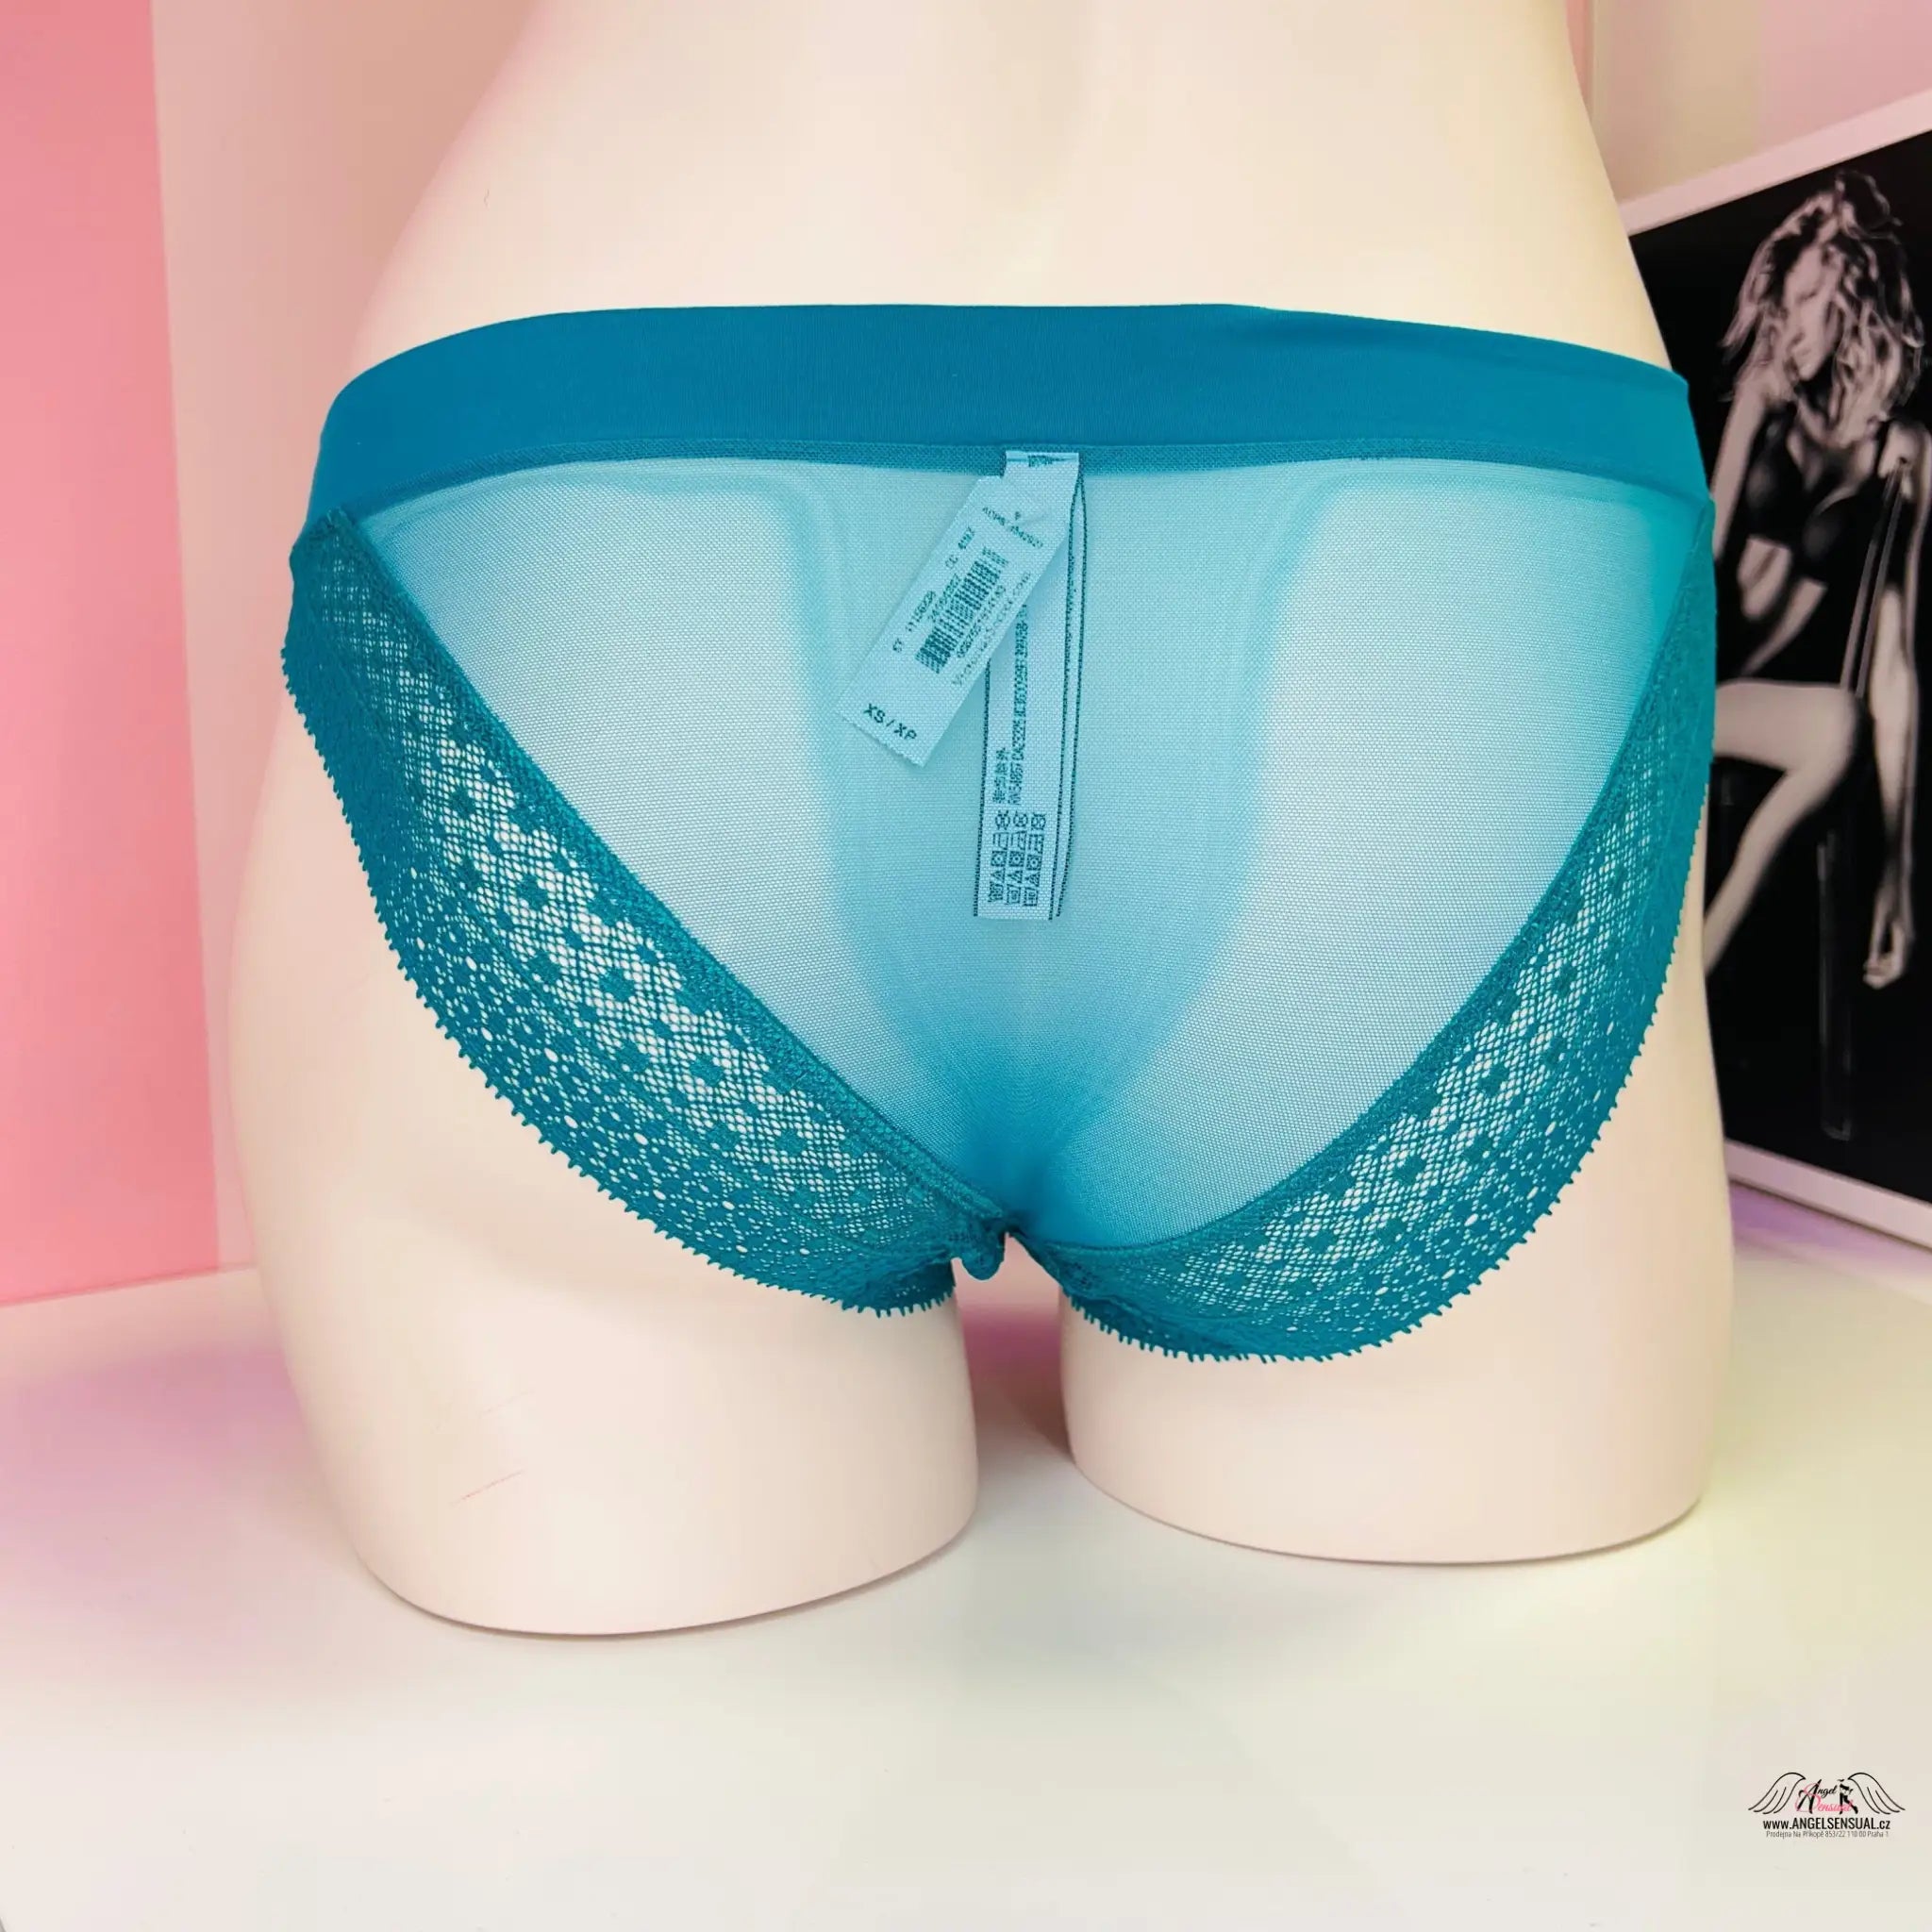 Síťované kalhotky s krajkoui - Kalhotky Victoria’s Secret